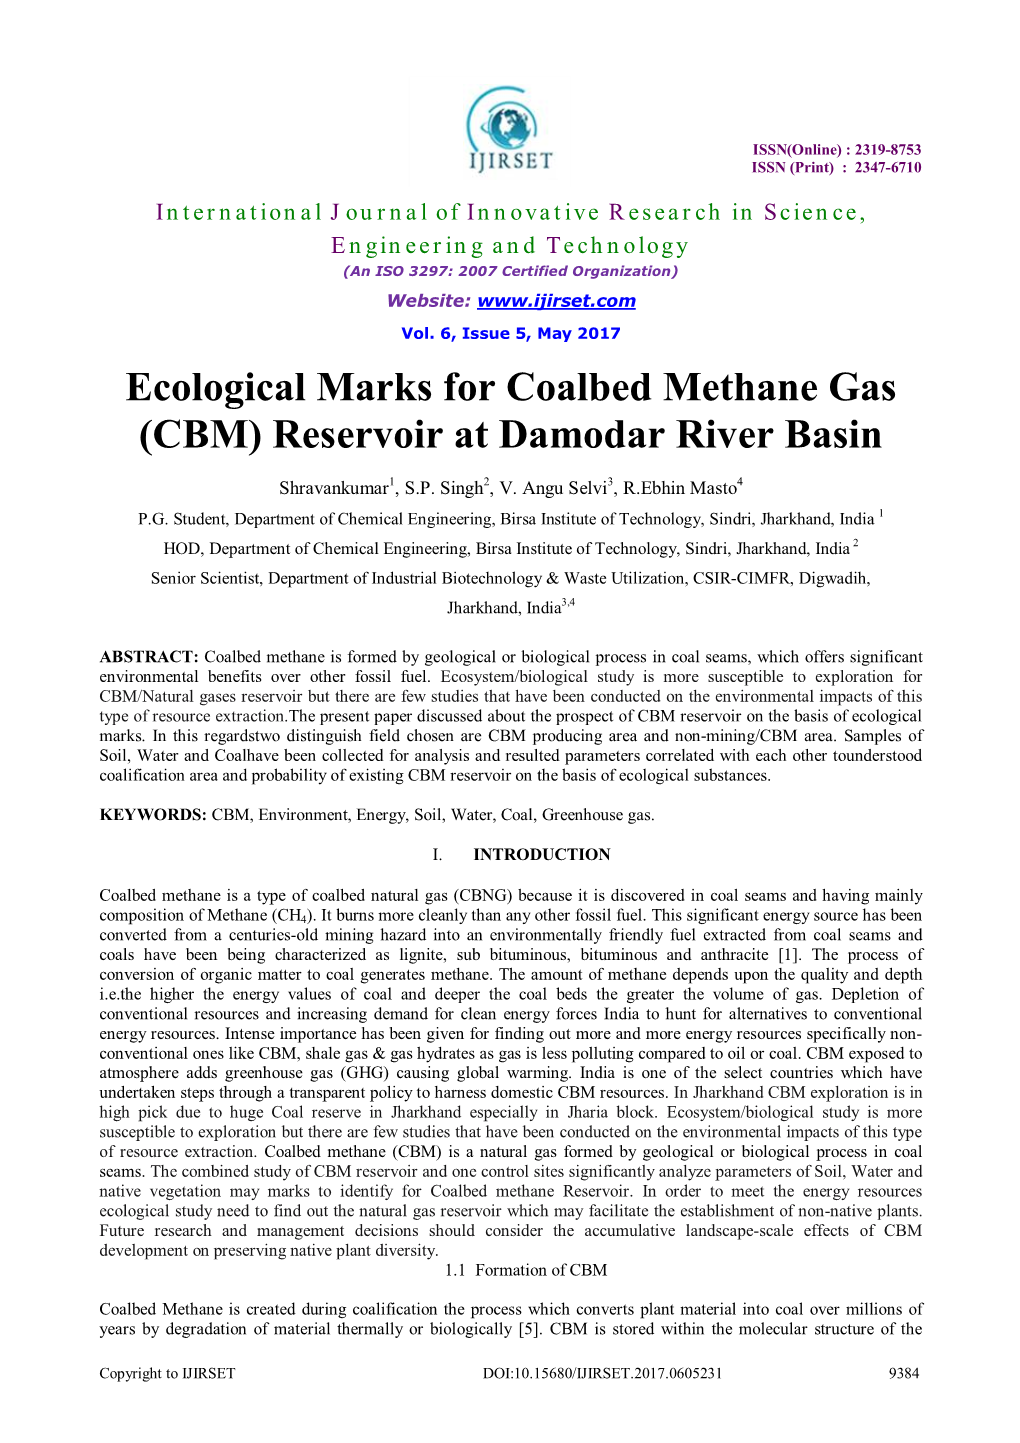 Ecological Marks for Coalbed Methane Gas (CBM) Reservoir at Damodar River Basin